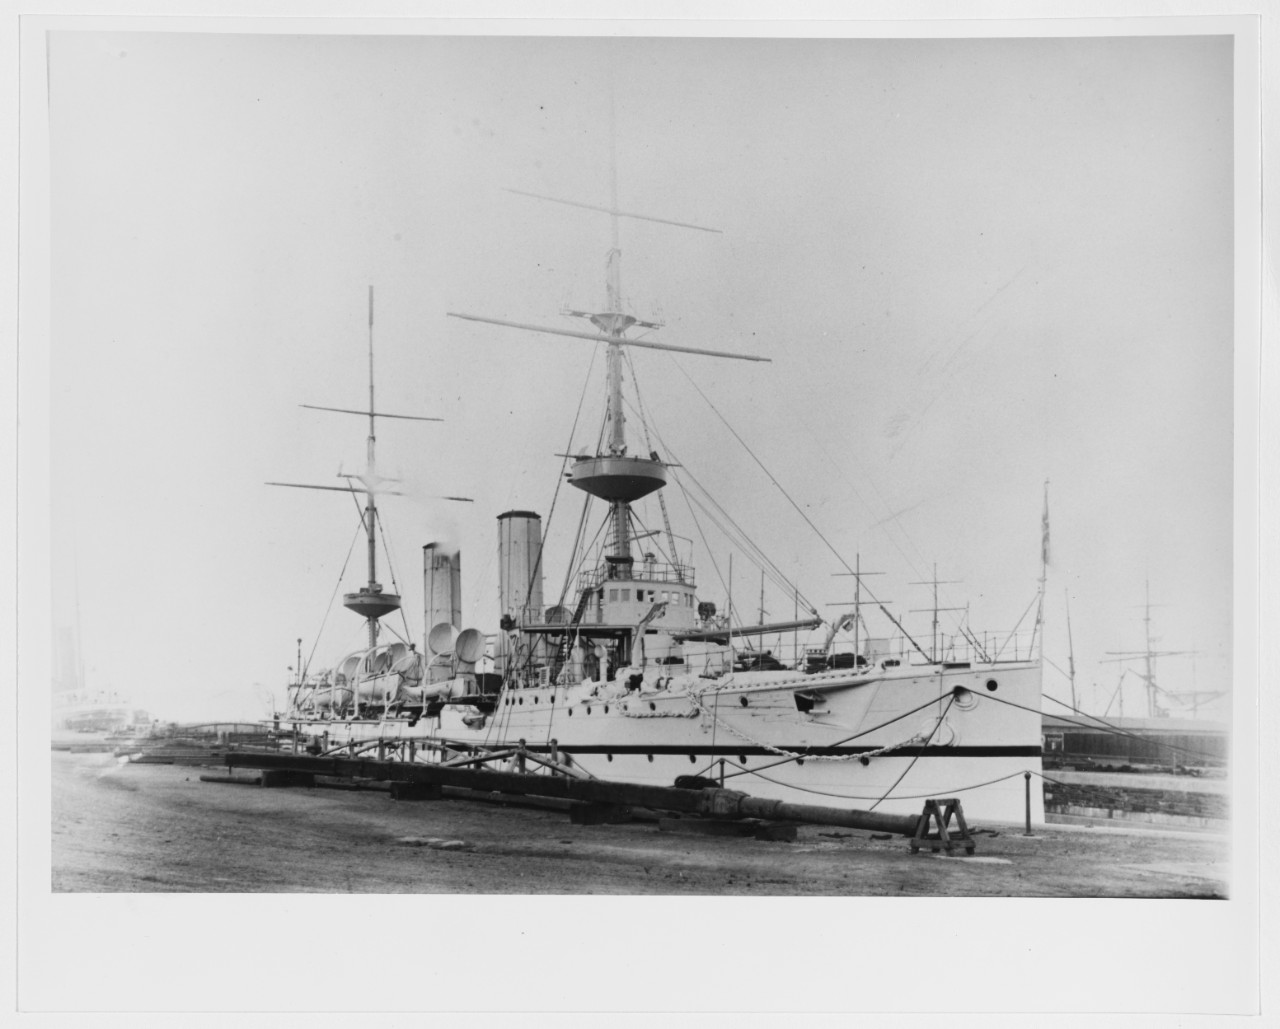 HMS DORIS (Second class cruiser, 1896-1919)